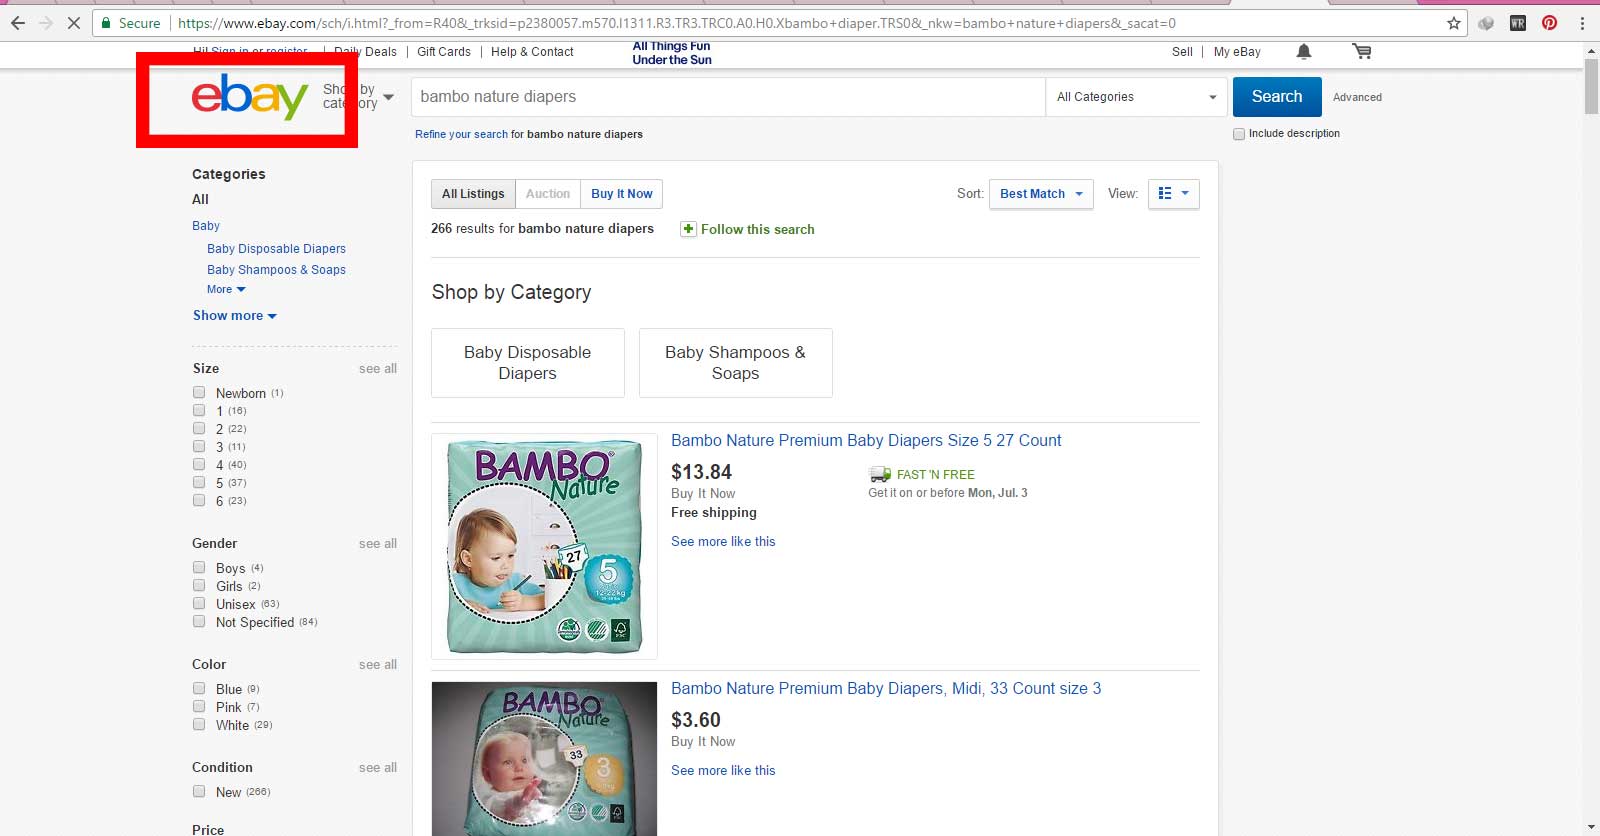 فروش پوشک بچه بامبو ساخت کشور دانمارک در سایت اینترنتی ایبی